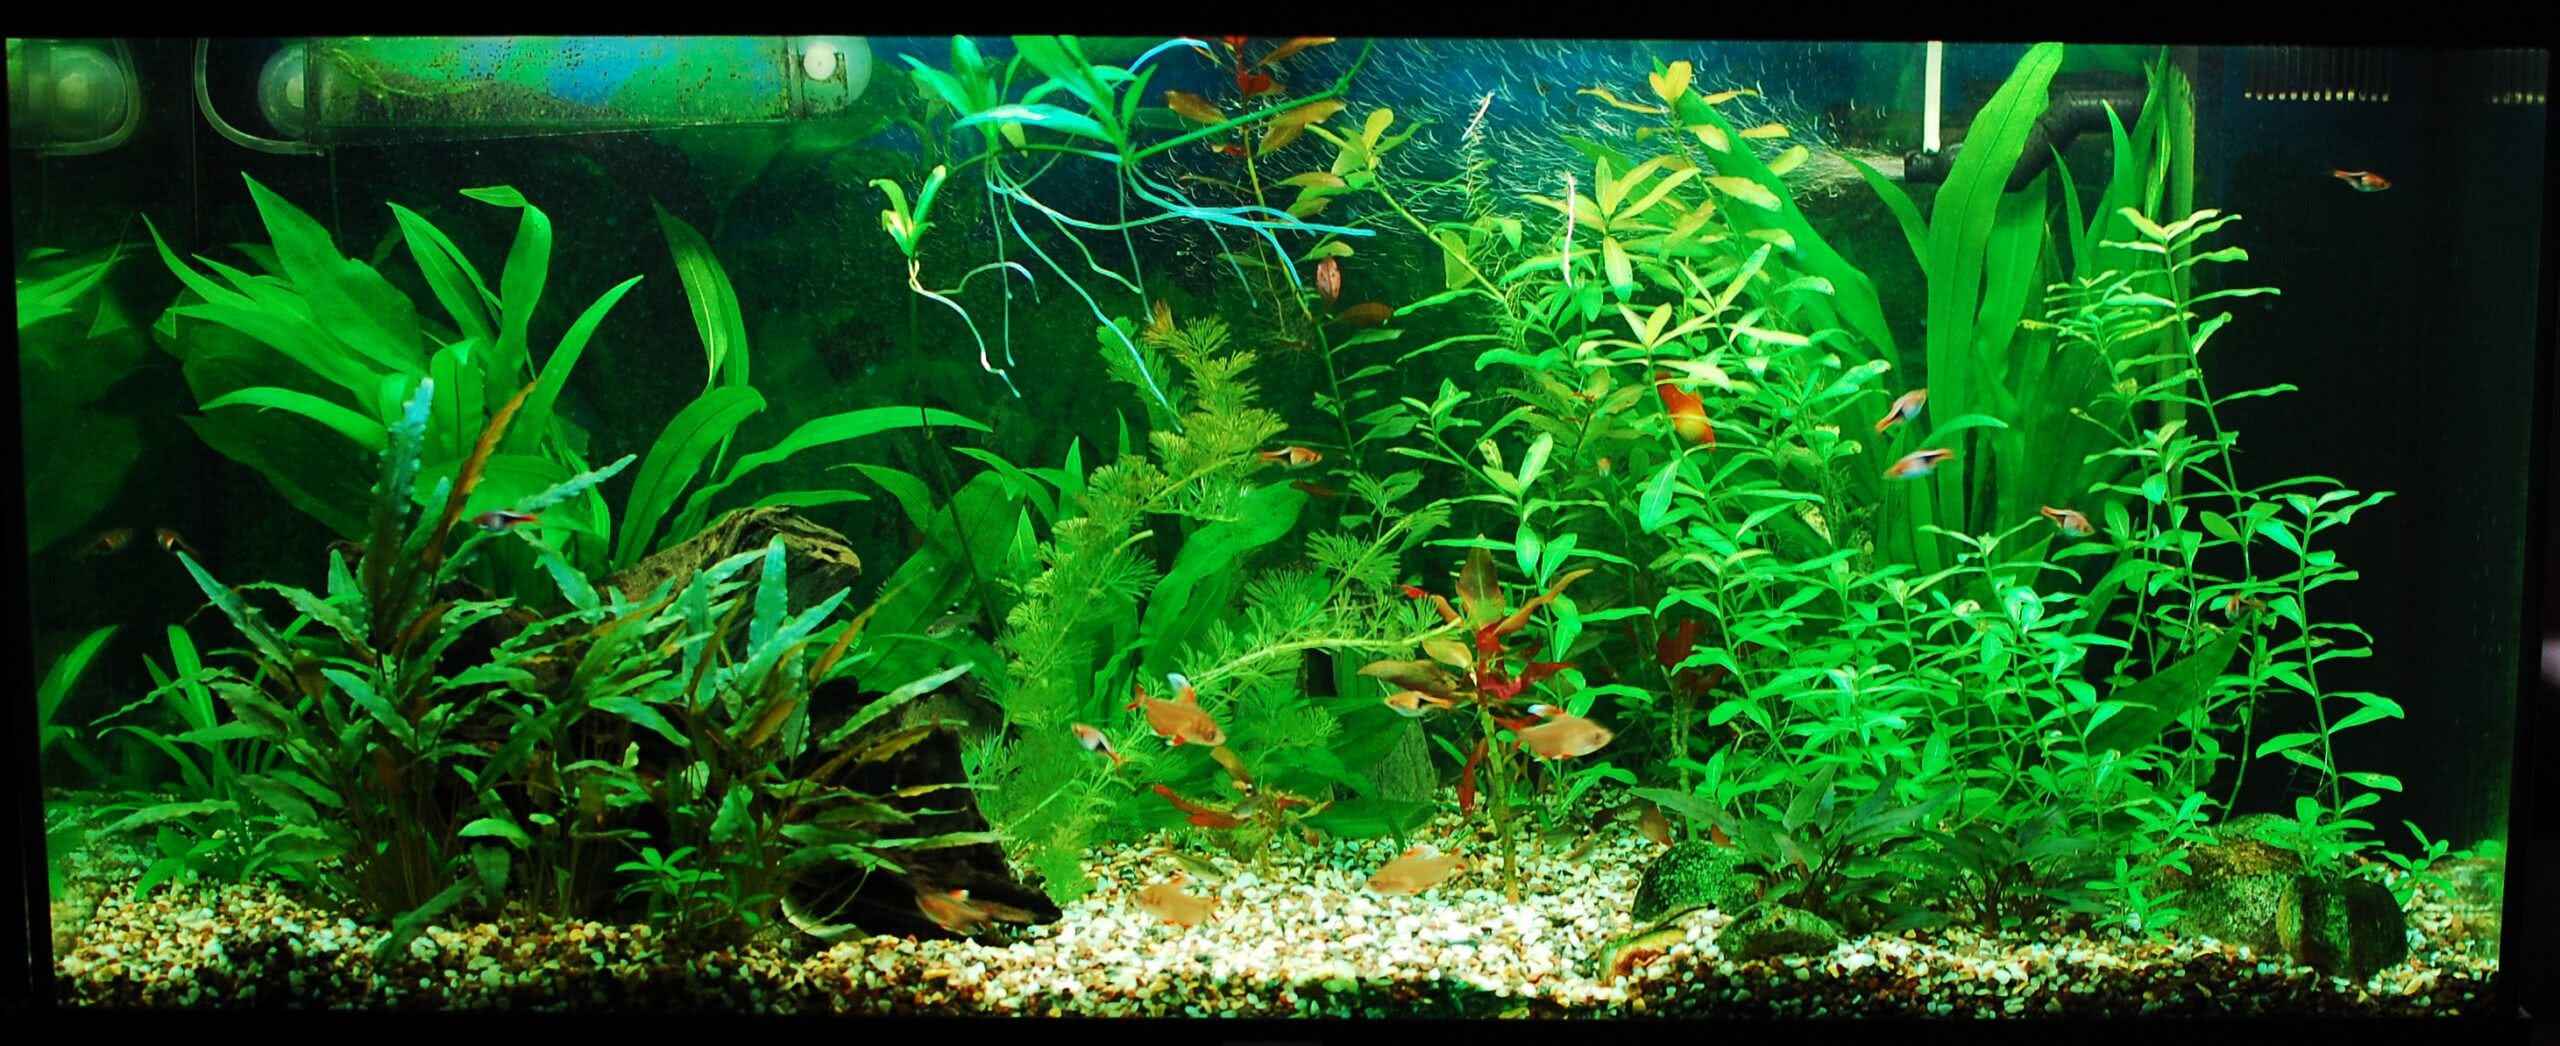  Пресноводный аквариум - Травник 